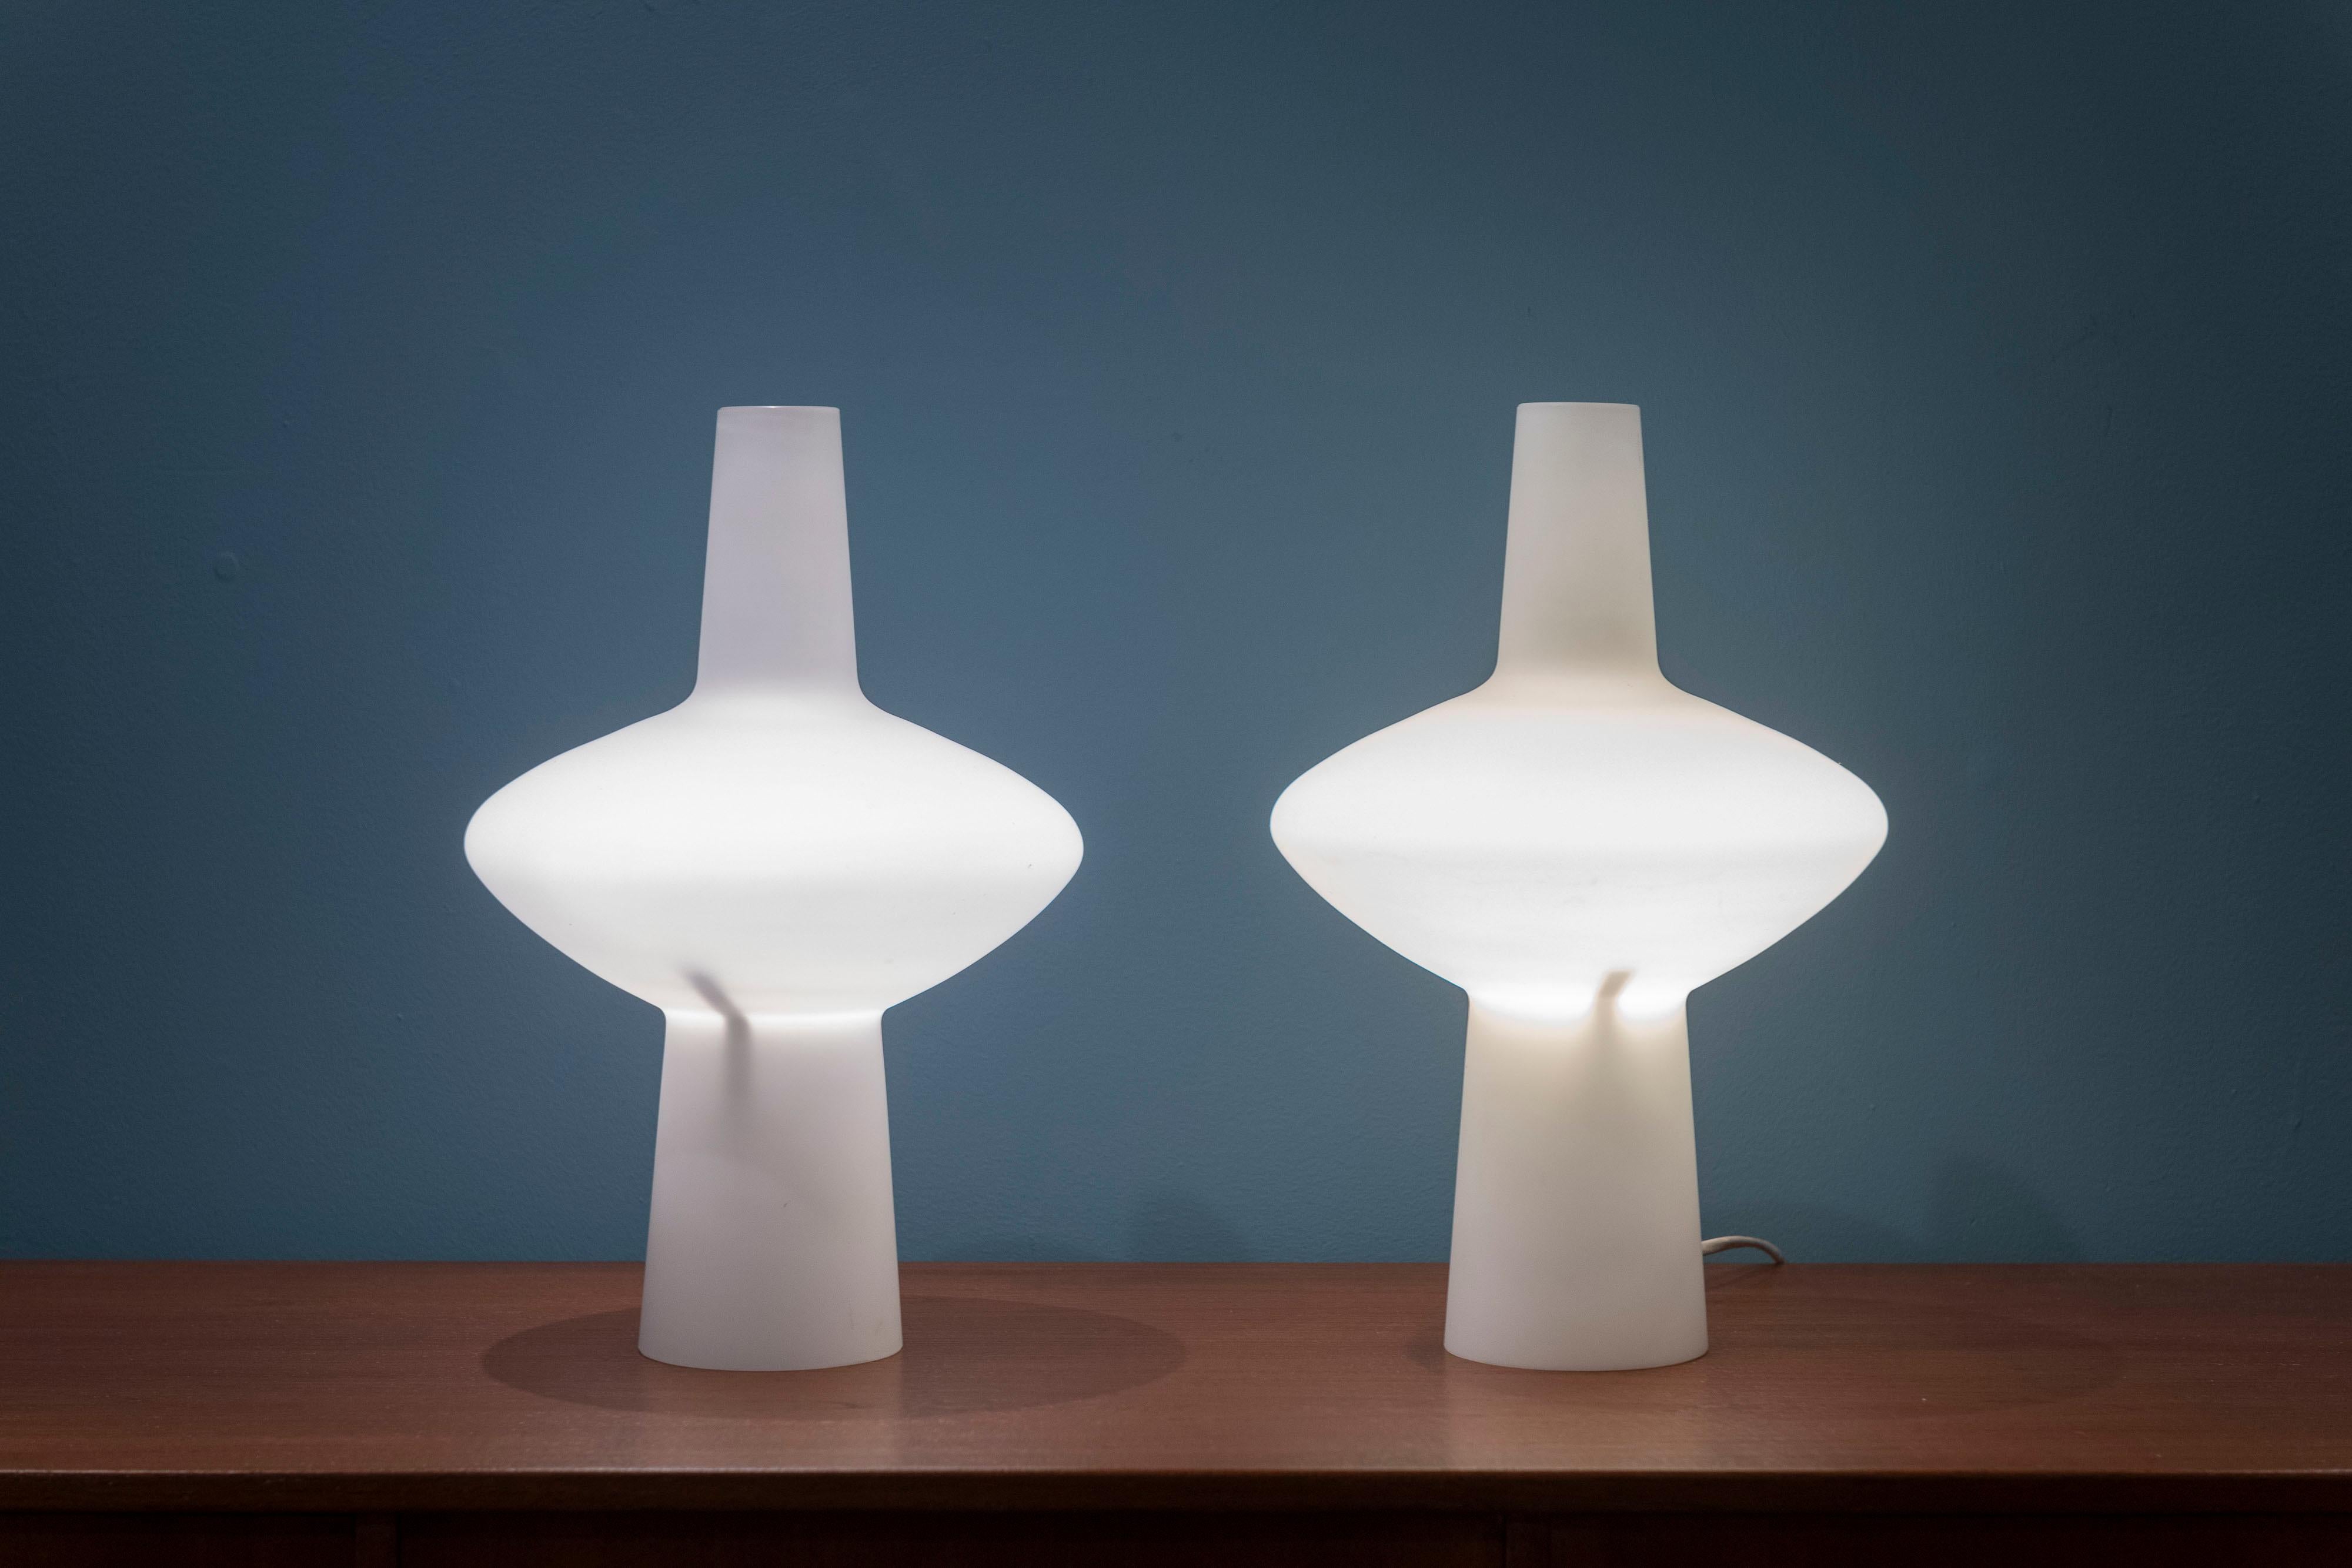 The Modern Scandinavian Modern Tischlampen aus opakem Glas, Schweden. Lampen in skulpturaler Form, die ein schönes und sanftes Licht ausstrahlen, in sehr gutem Originalzustand. Eine mit dem Label Buhlmarks, Schweden.